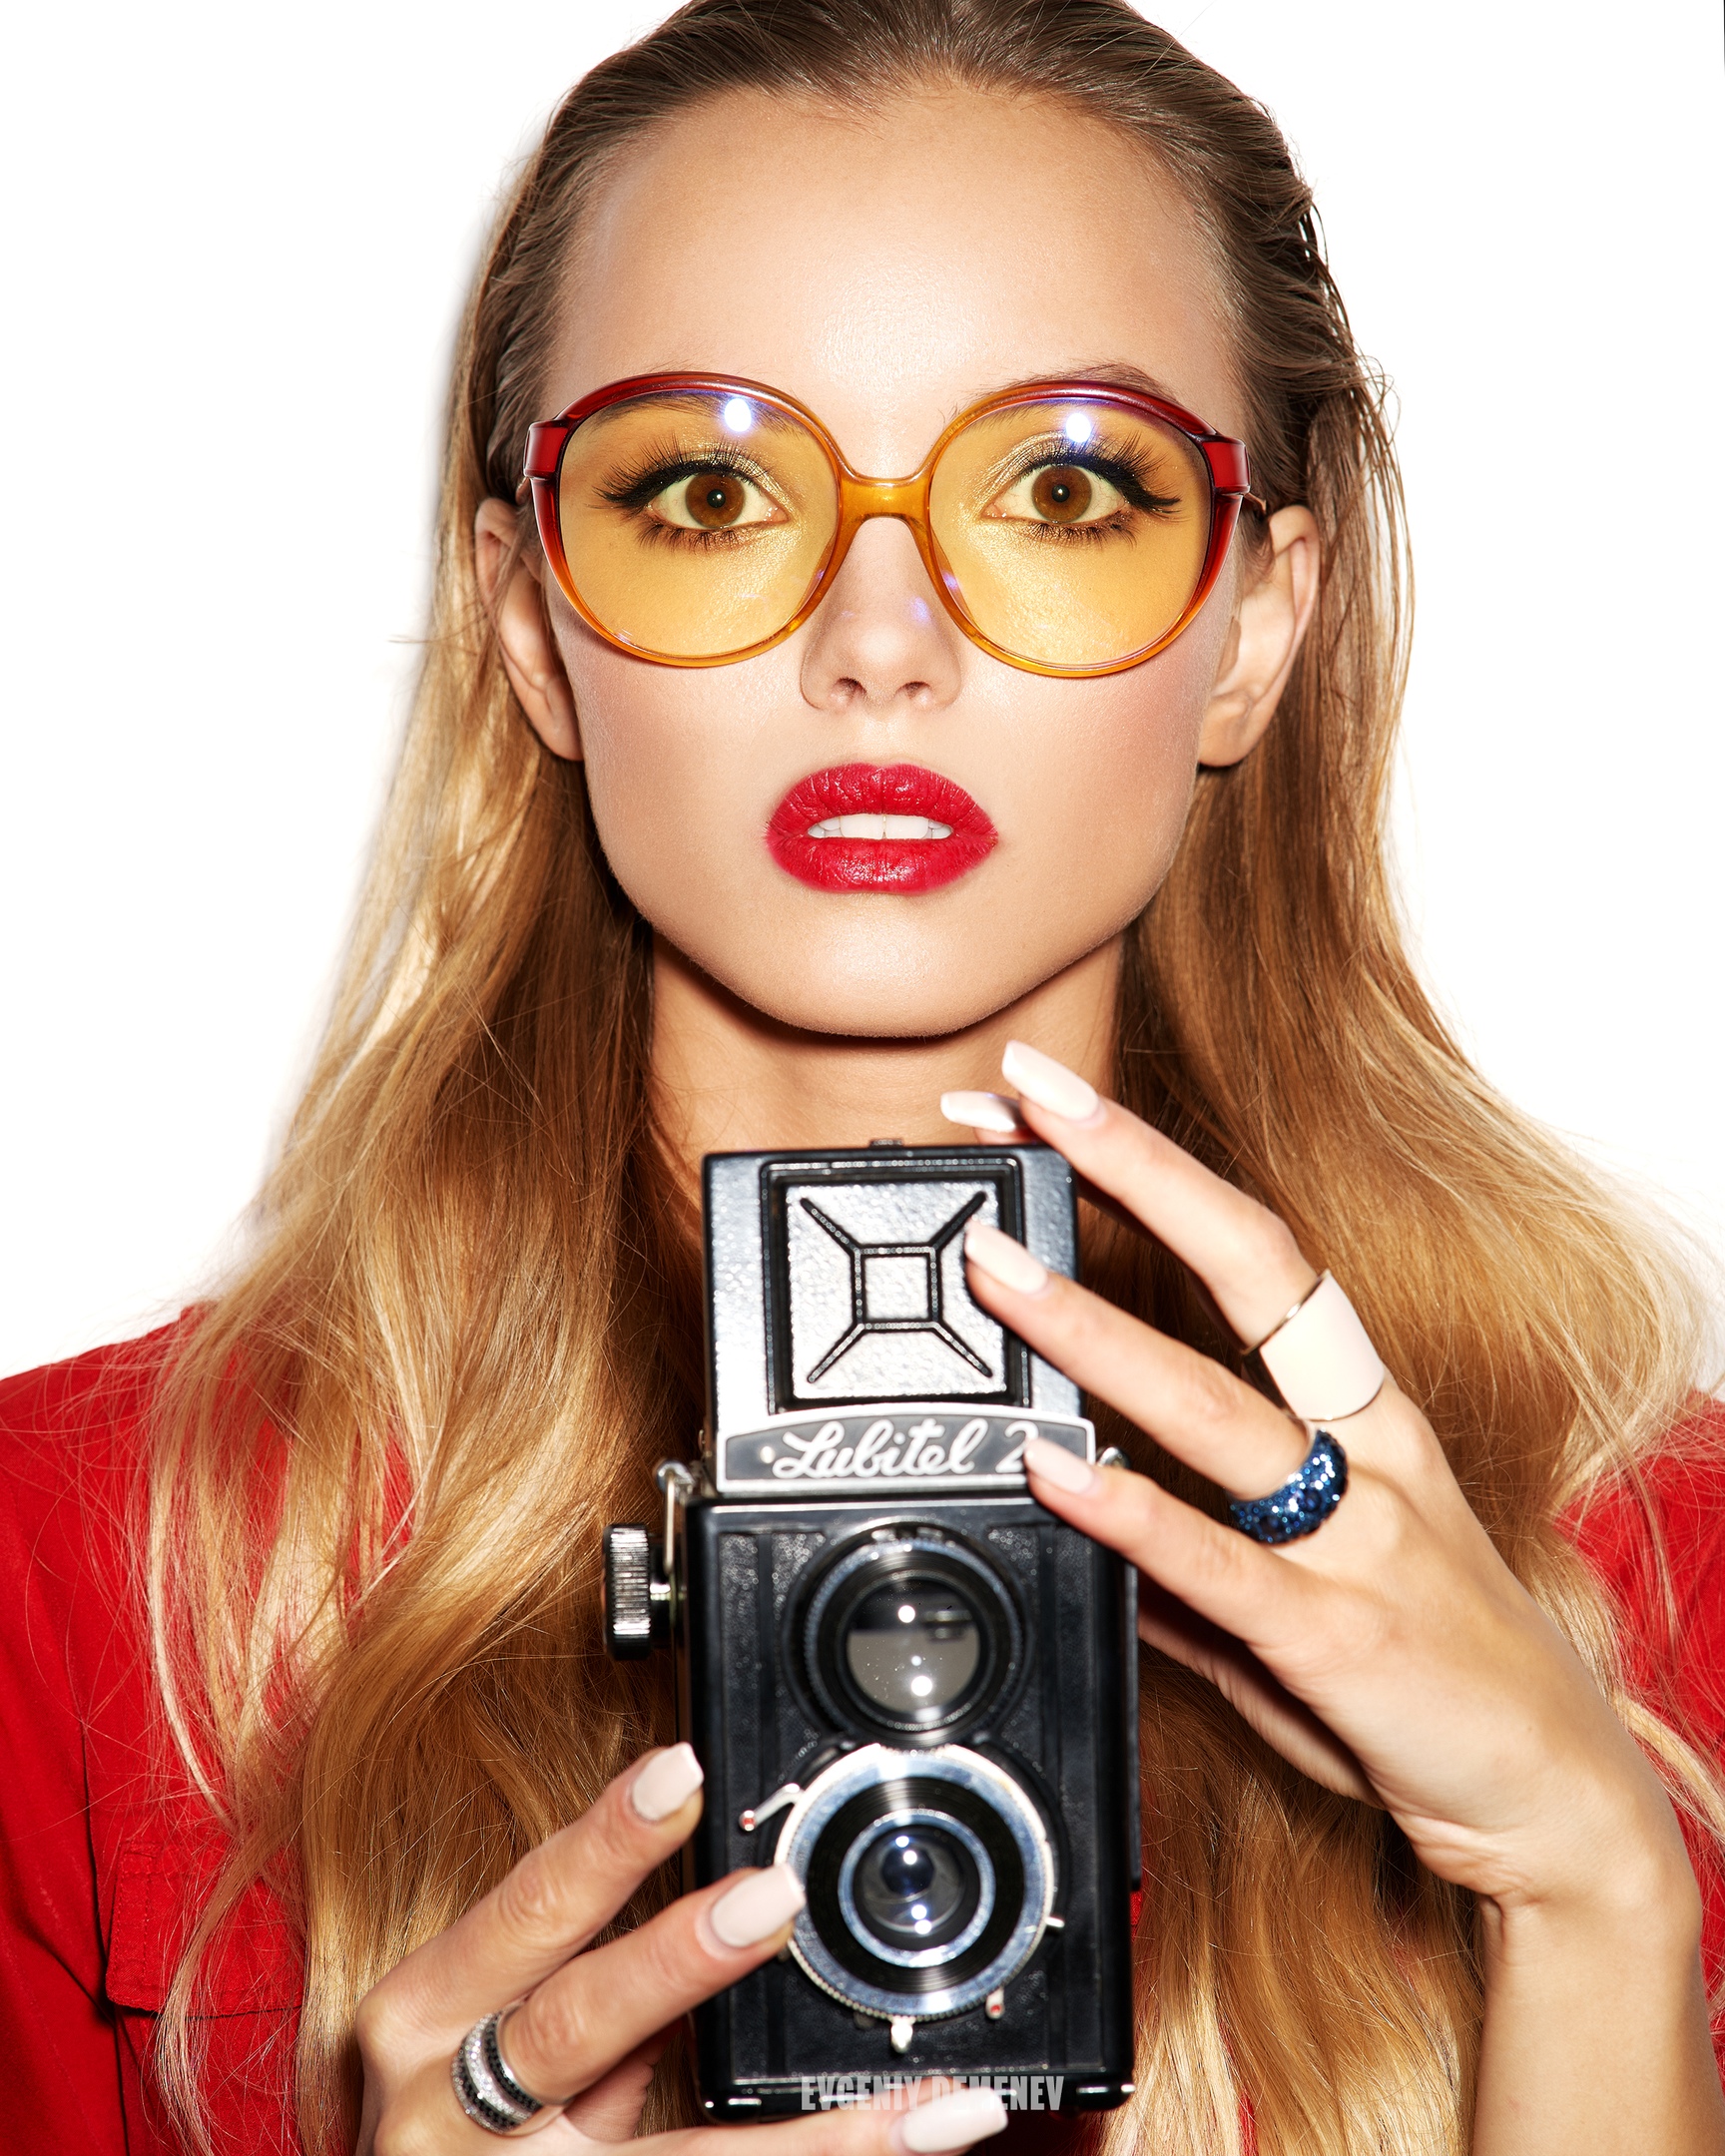 Evgeny Demenev Women Brunette Sunglasses Portrait Red Clothing Rings Camera Red Lipstick White Backg 1728x2160